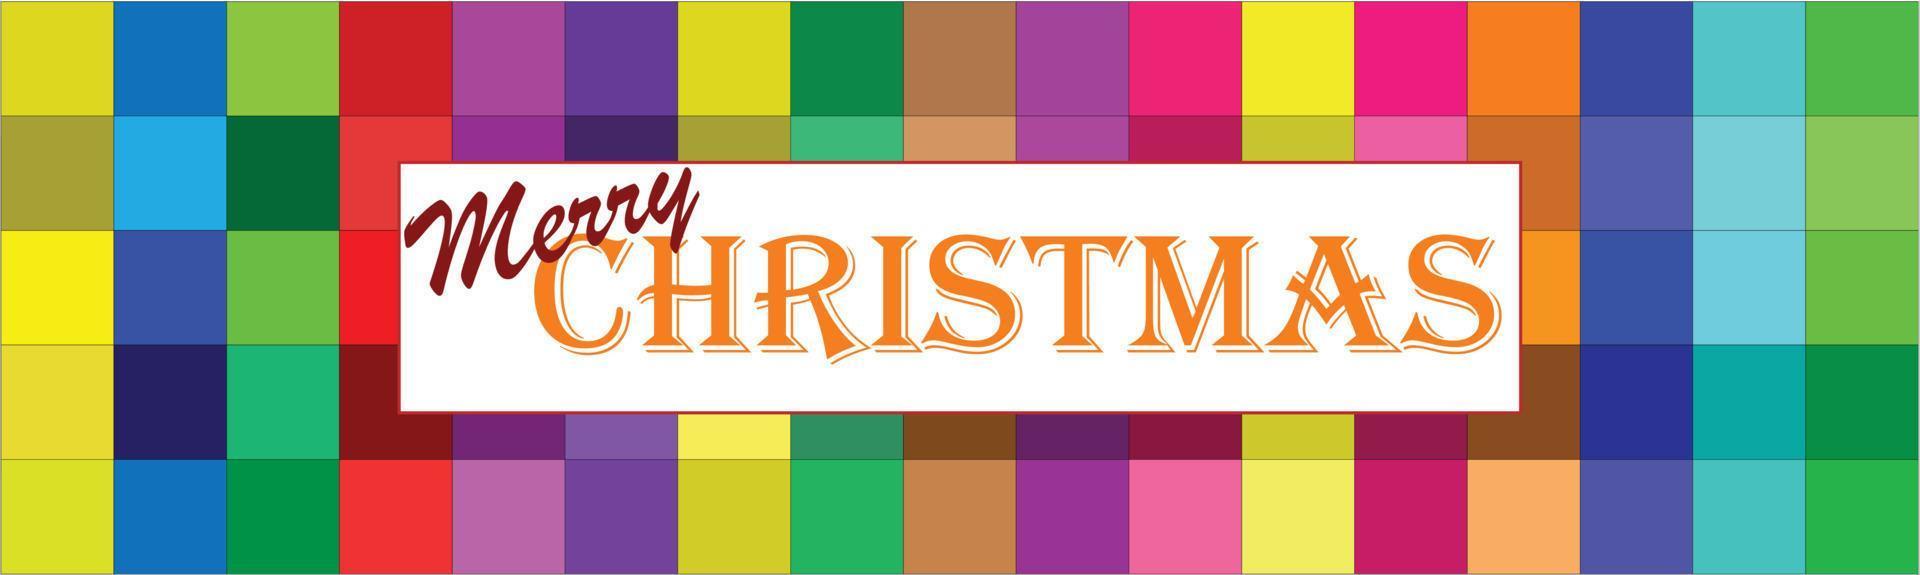 banner web horizontal de feliz navidad con tipografía navideña y forma de rectángulo sobre fondo de color, banner de saludo de navidad, encabezados, carteles, tarjetas, sitio web. banner web, ilustración vectorial. vector